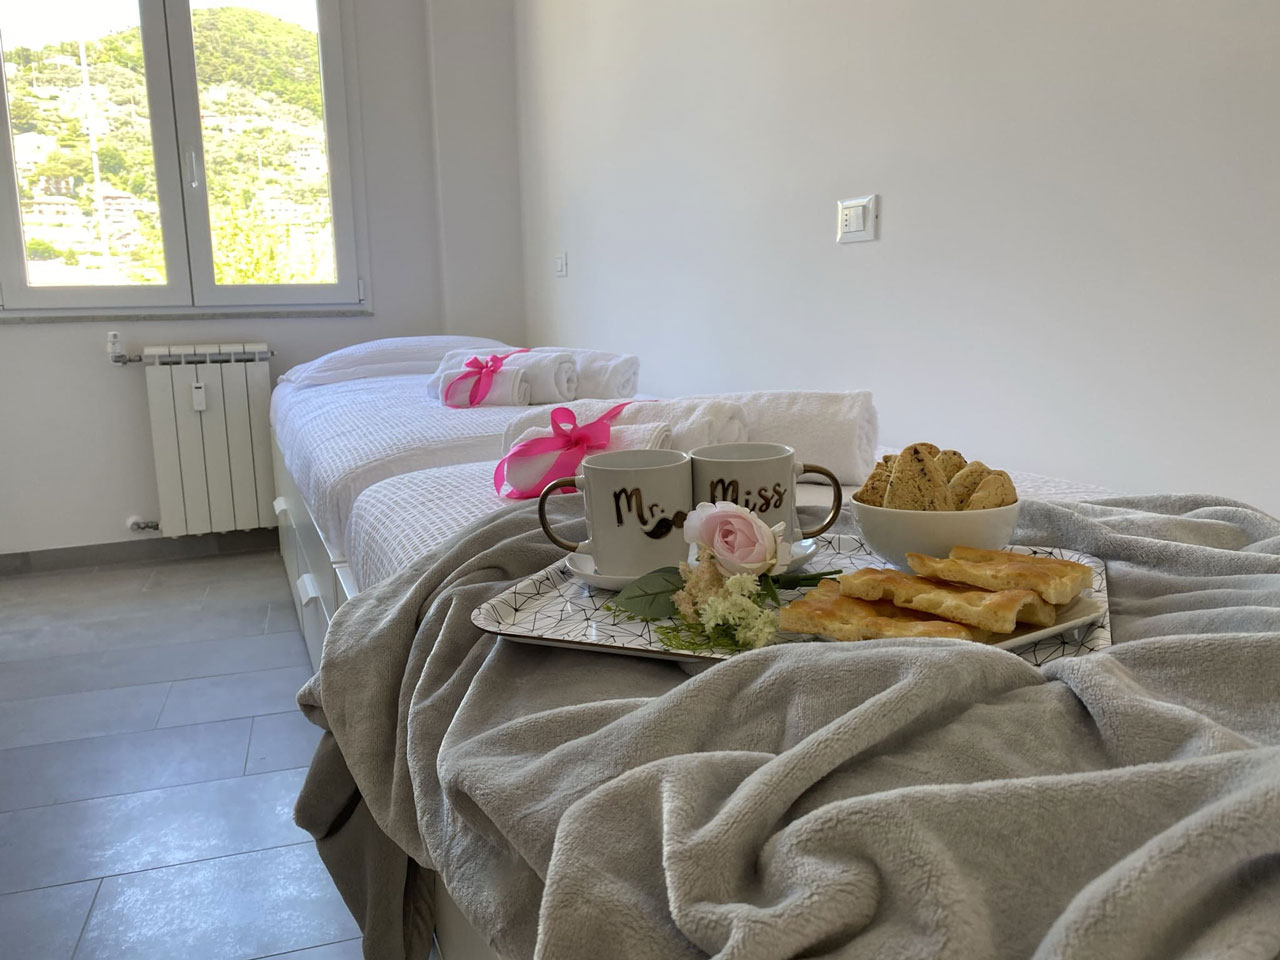 Liguria Home holidays casa vacanze Recco camera singola letti colazione genovese